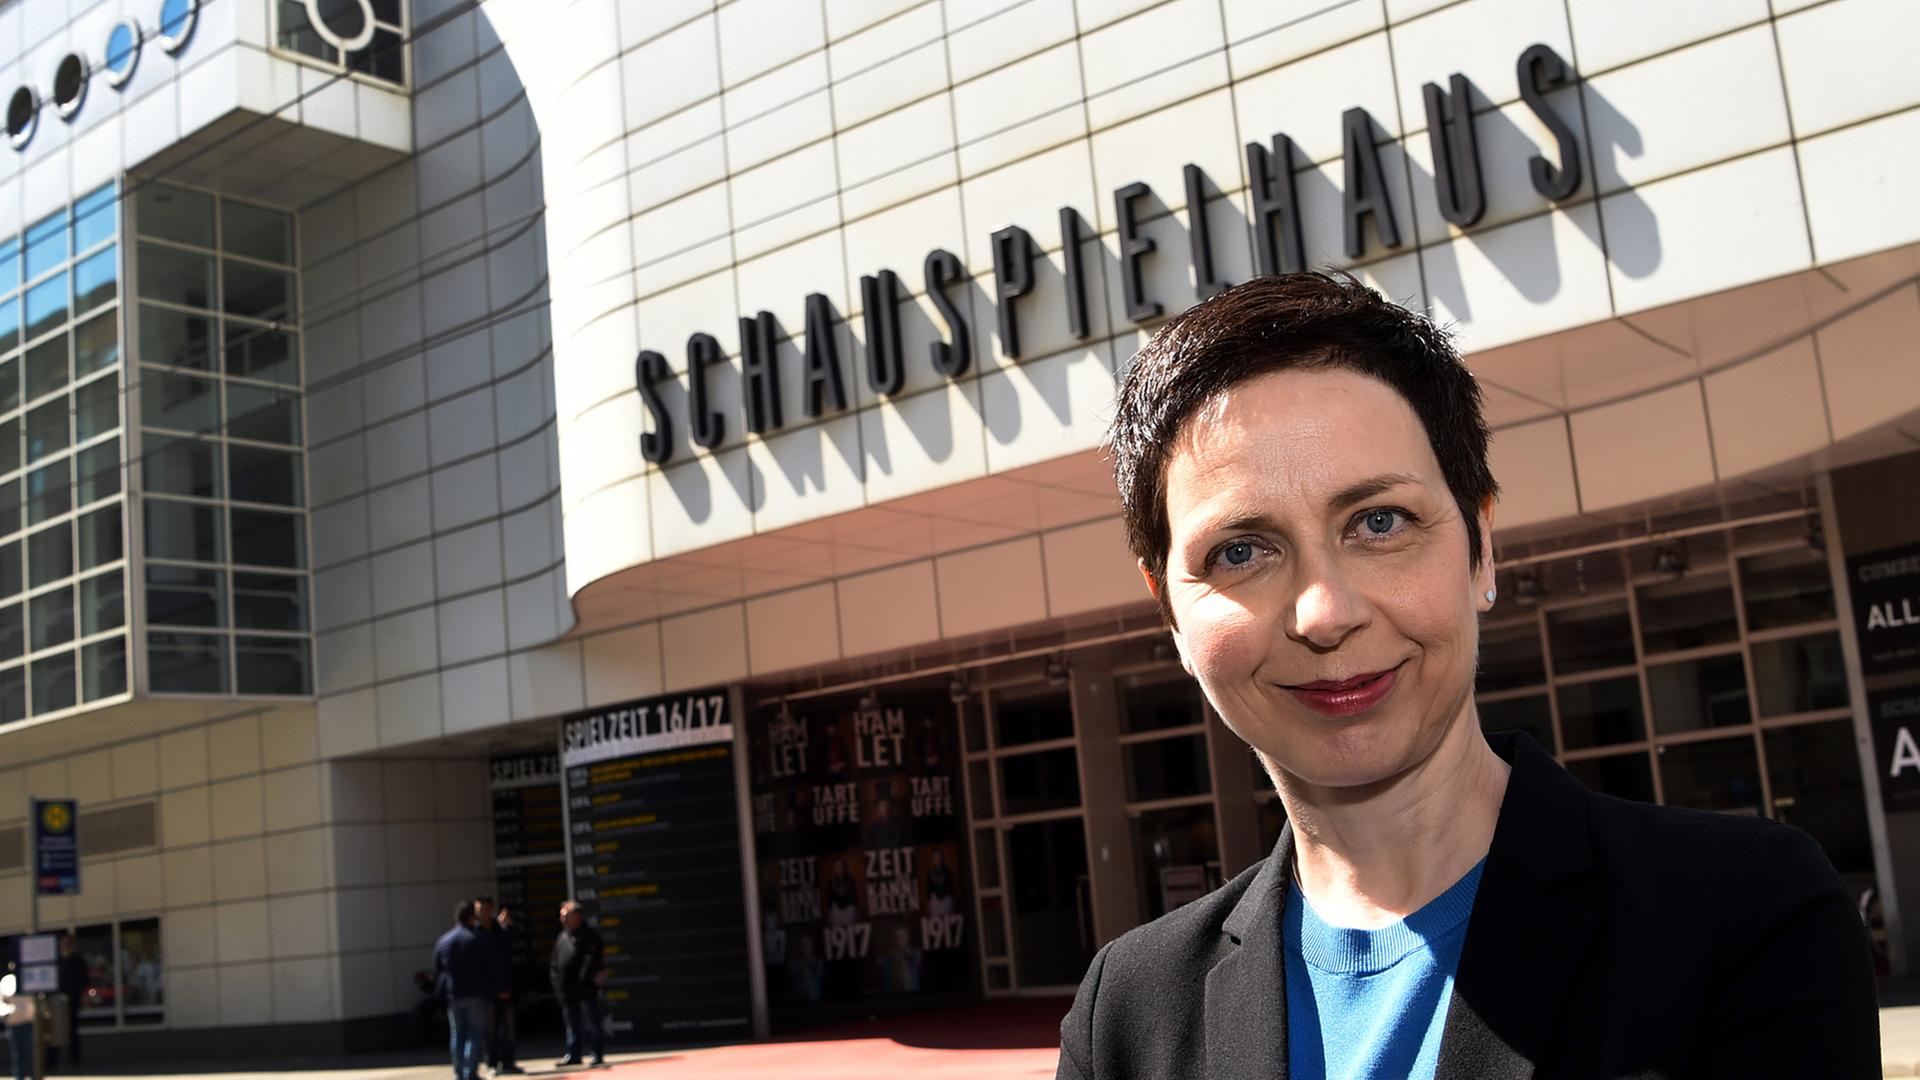 Sonja Anders steht am 11.05.2017 während einer Pressekonferenz zur Nachfolge der Intendanzen an Staatstheater und Staatsoper Hannover vor dem Schauspielhaus in Hannover (Niedersachsen).